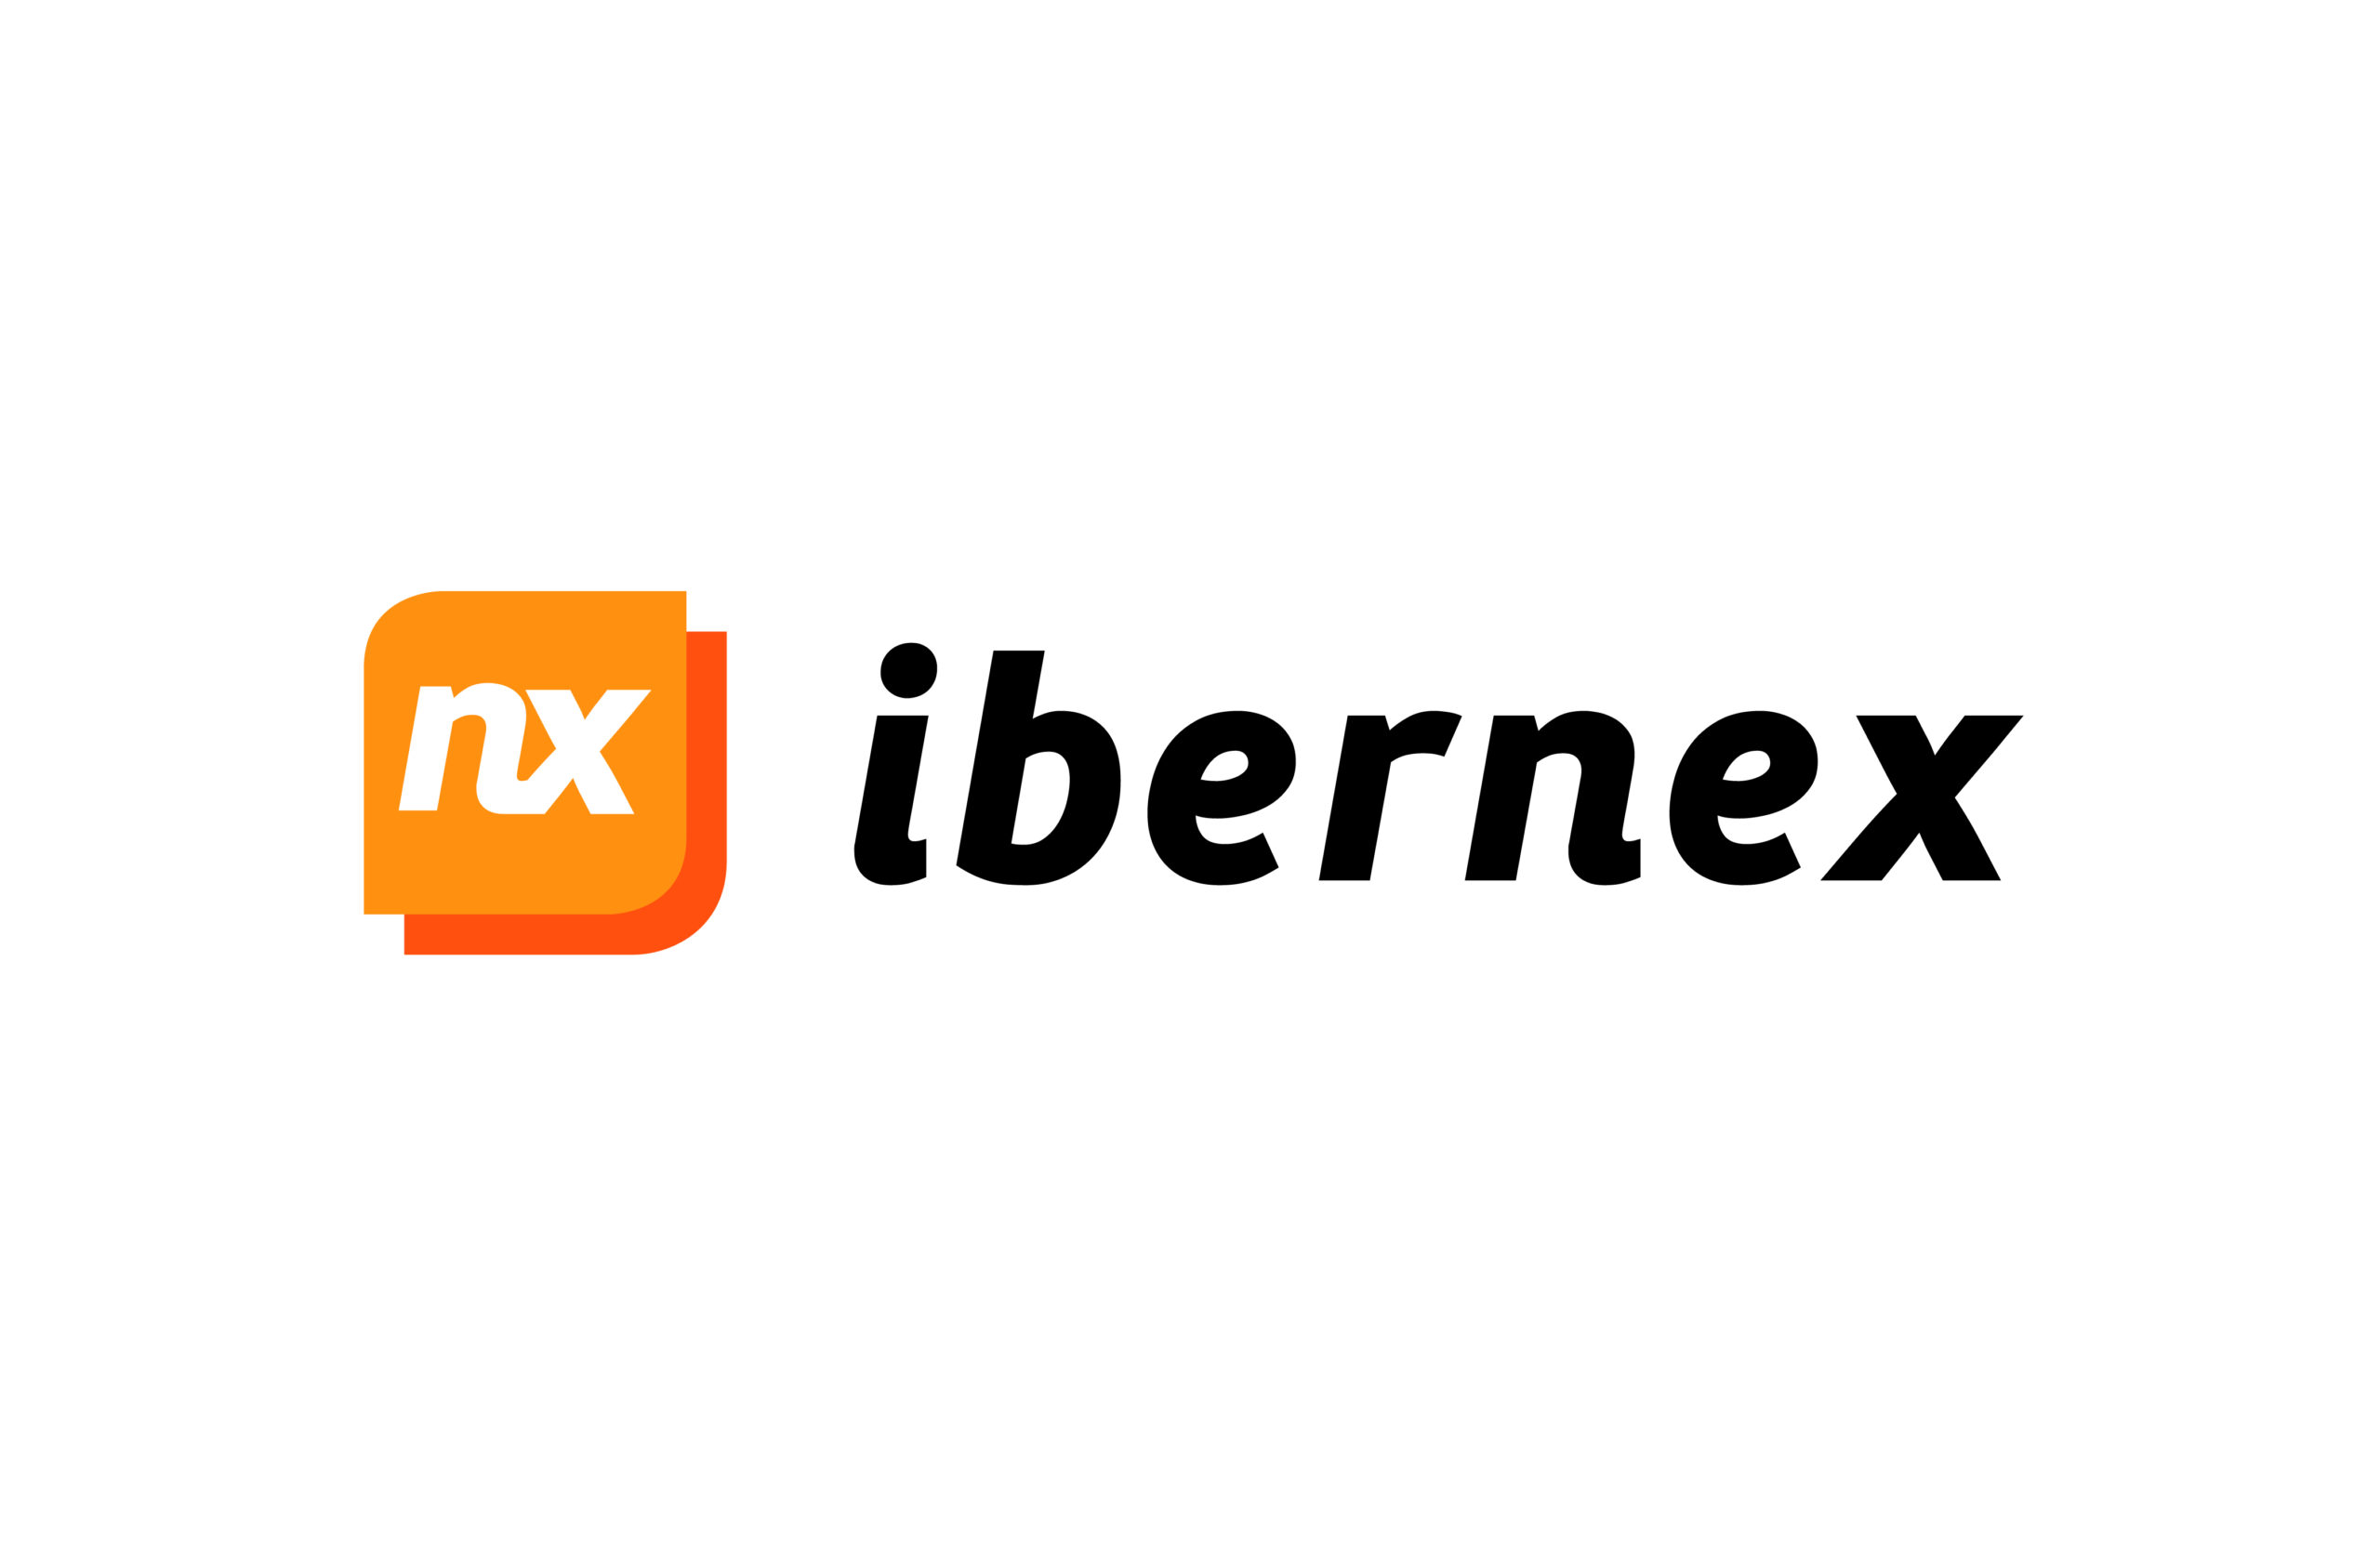 Configurador De Tags De Bienes Para Control De Errantes, Control De Acceso Y Localizacin Ibernex NX0367 - IBERNEX